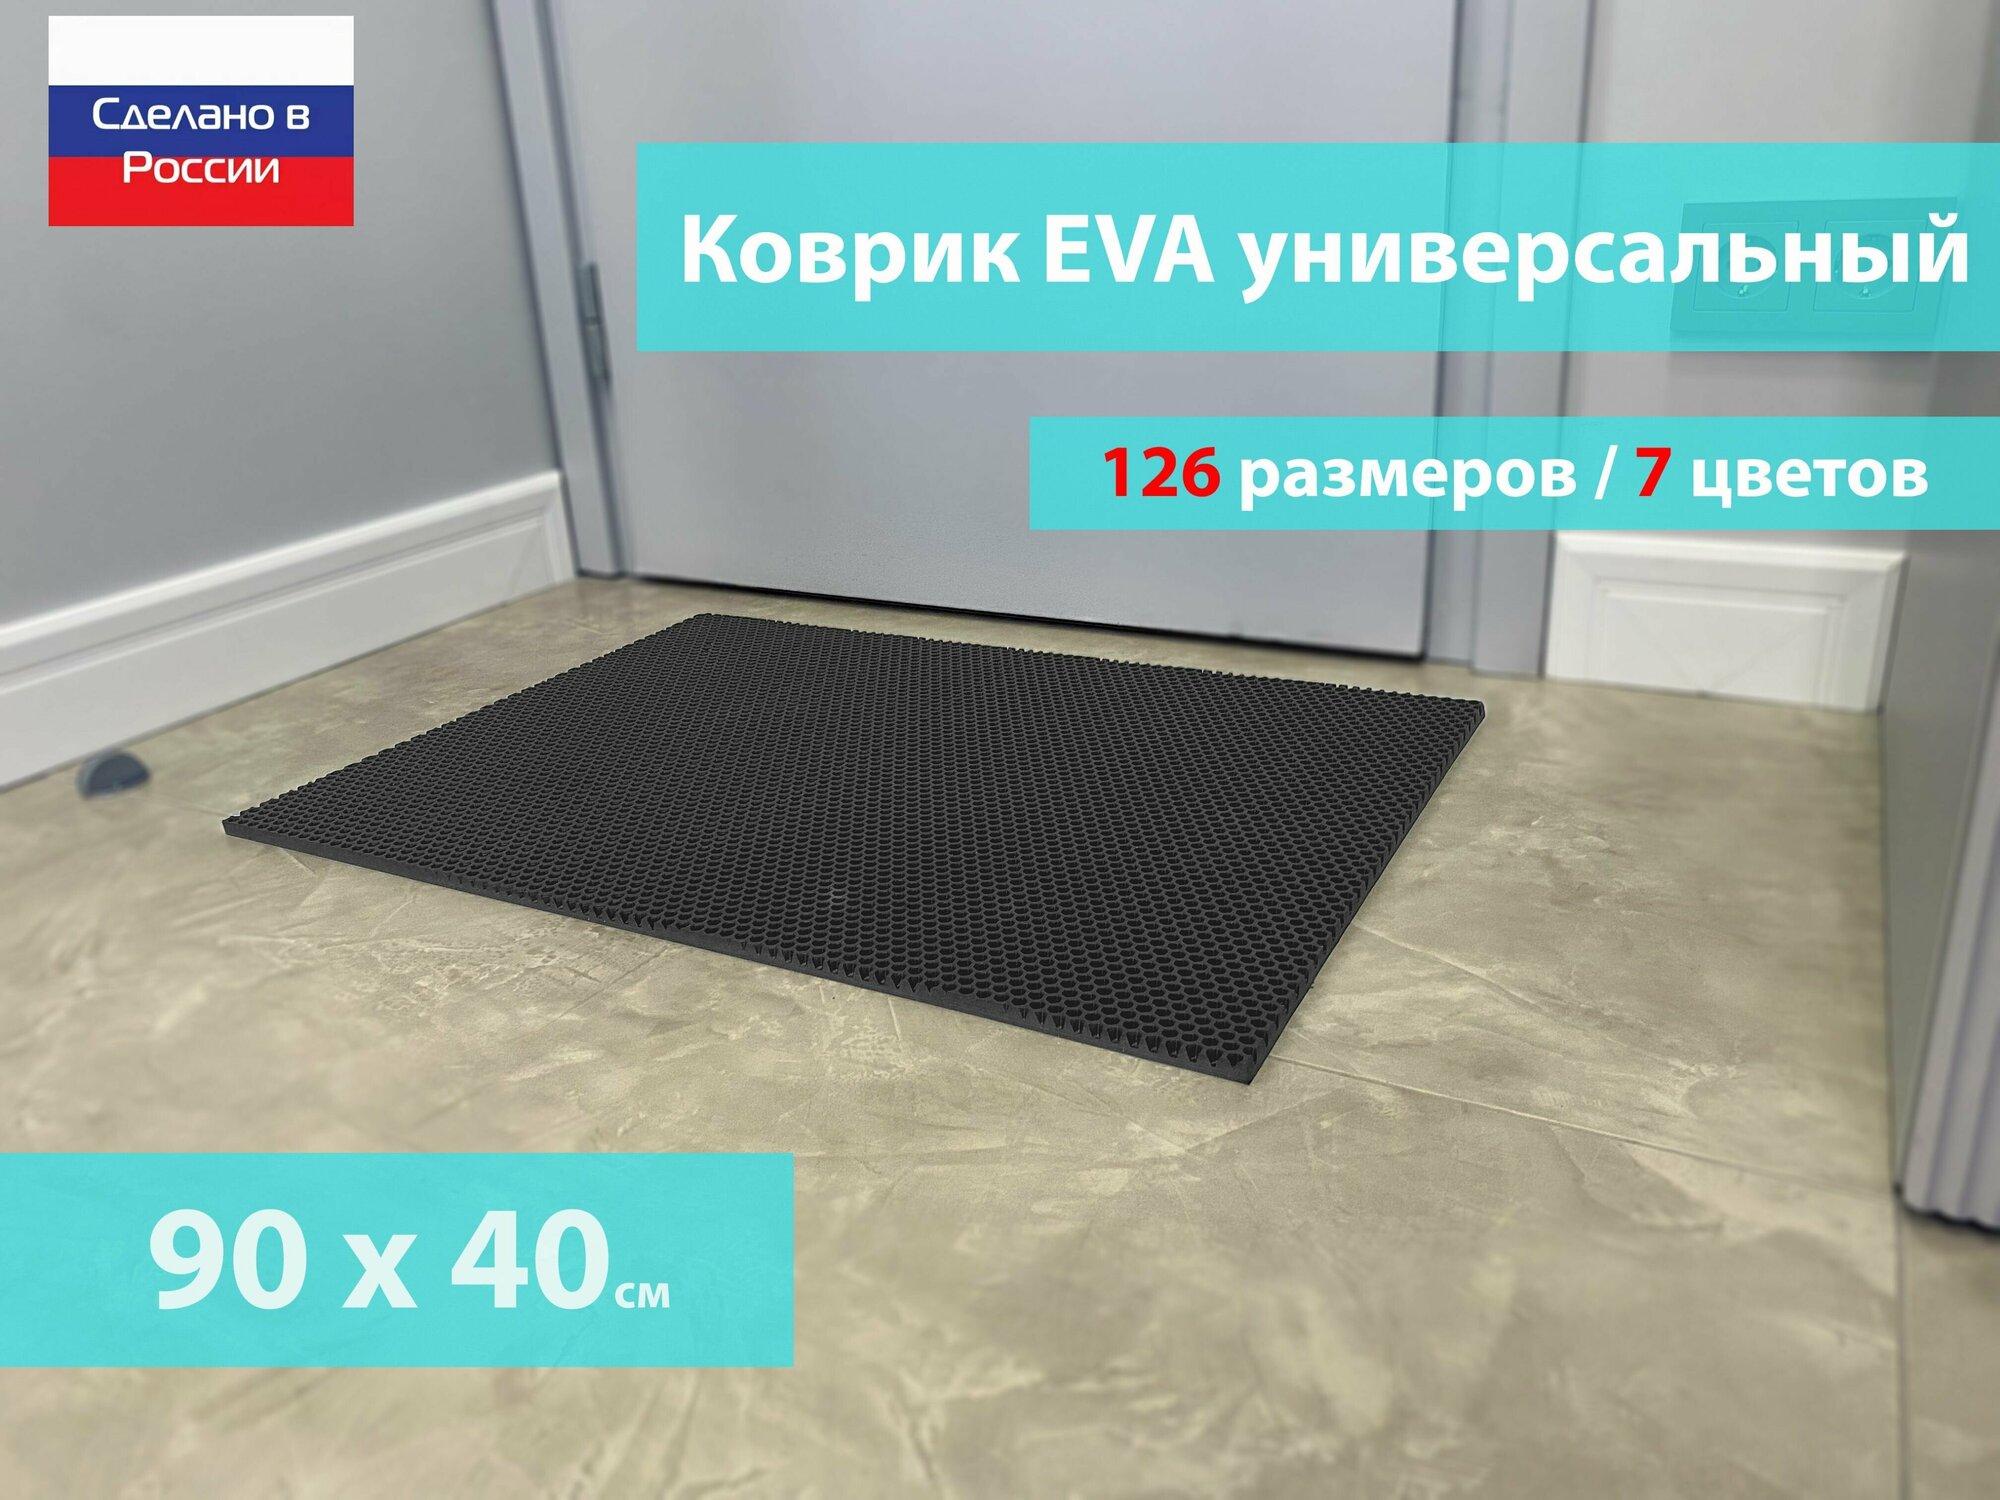 Коврик придверный EVA (ЕВА) в прихожую для обуви / Ковер ЭВА на пол перед дверью/ серый / размер 90 х 40 см